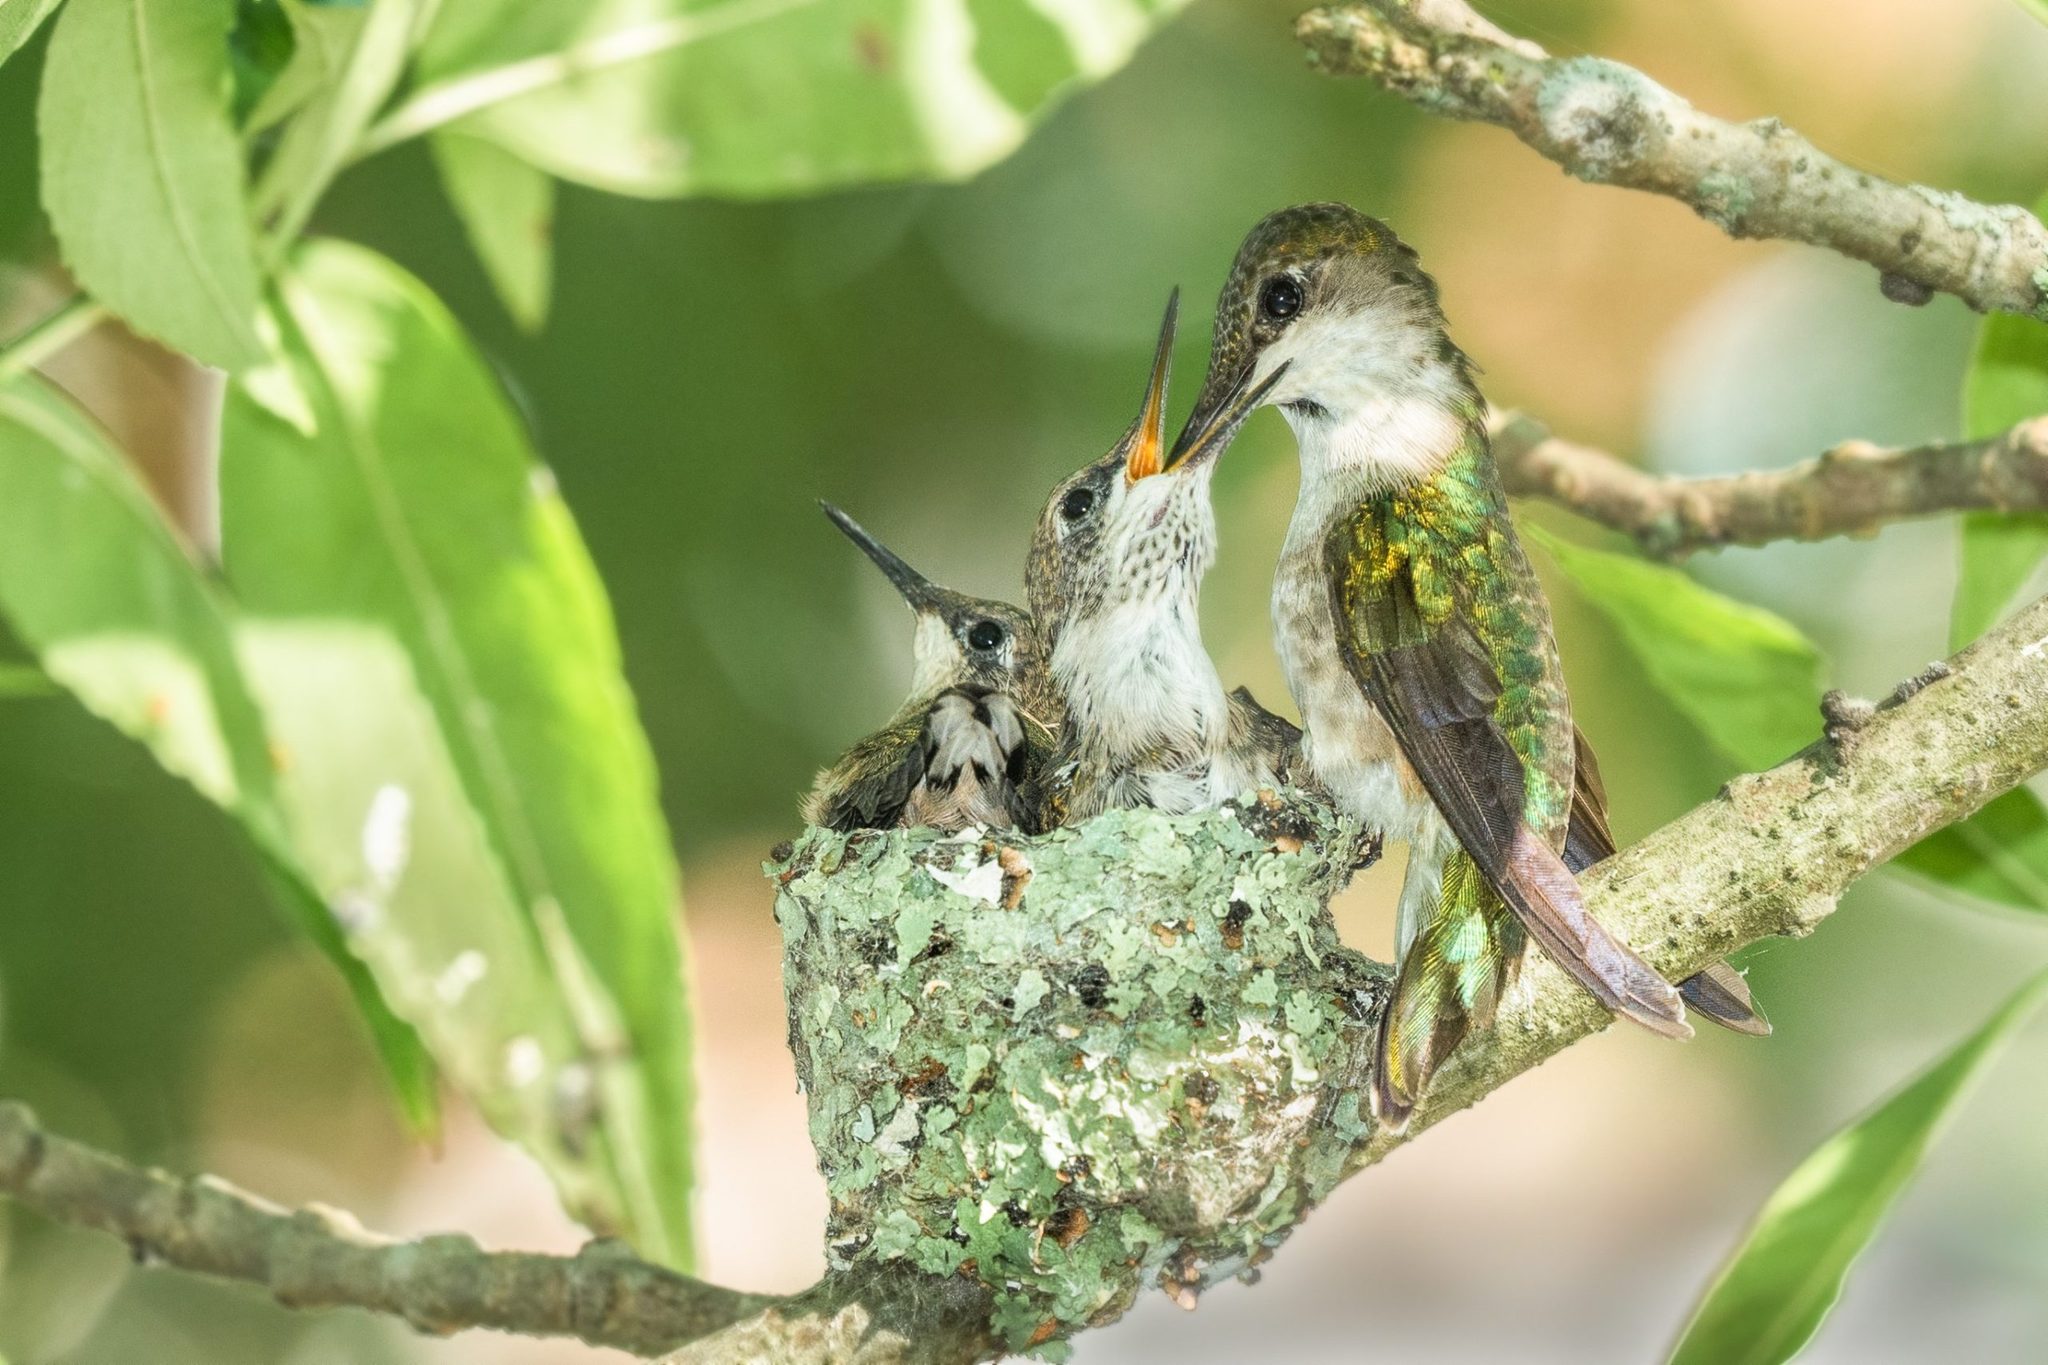 Hummingbird feeds chicks in nest